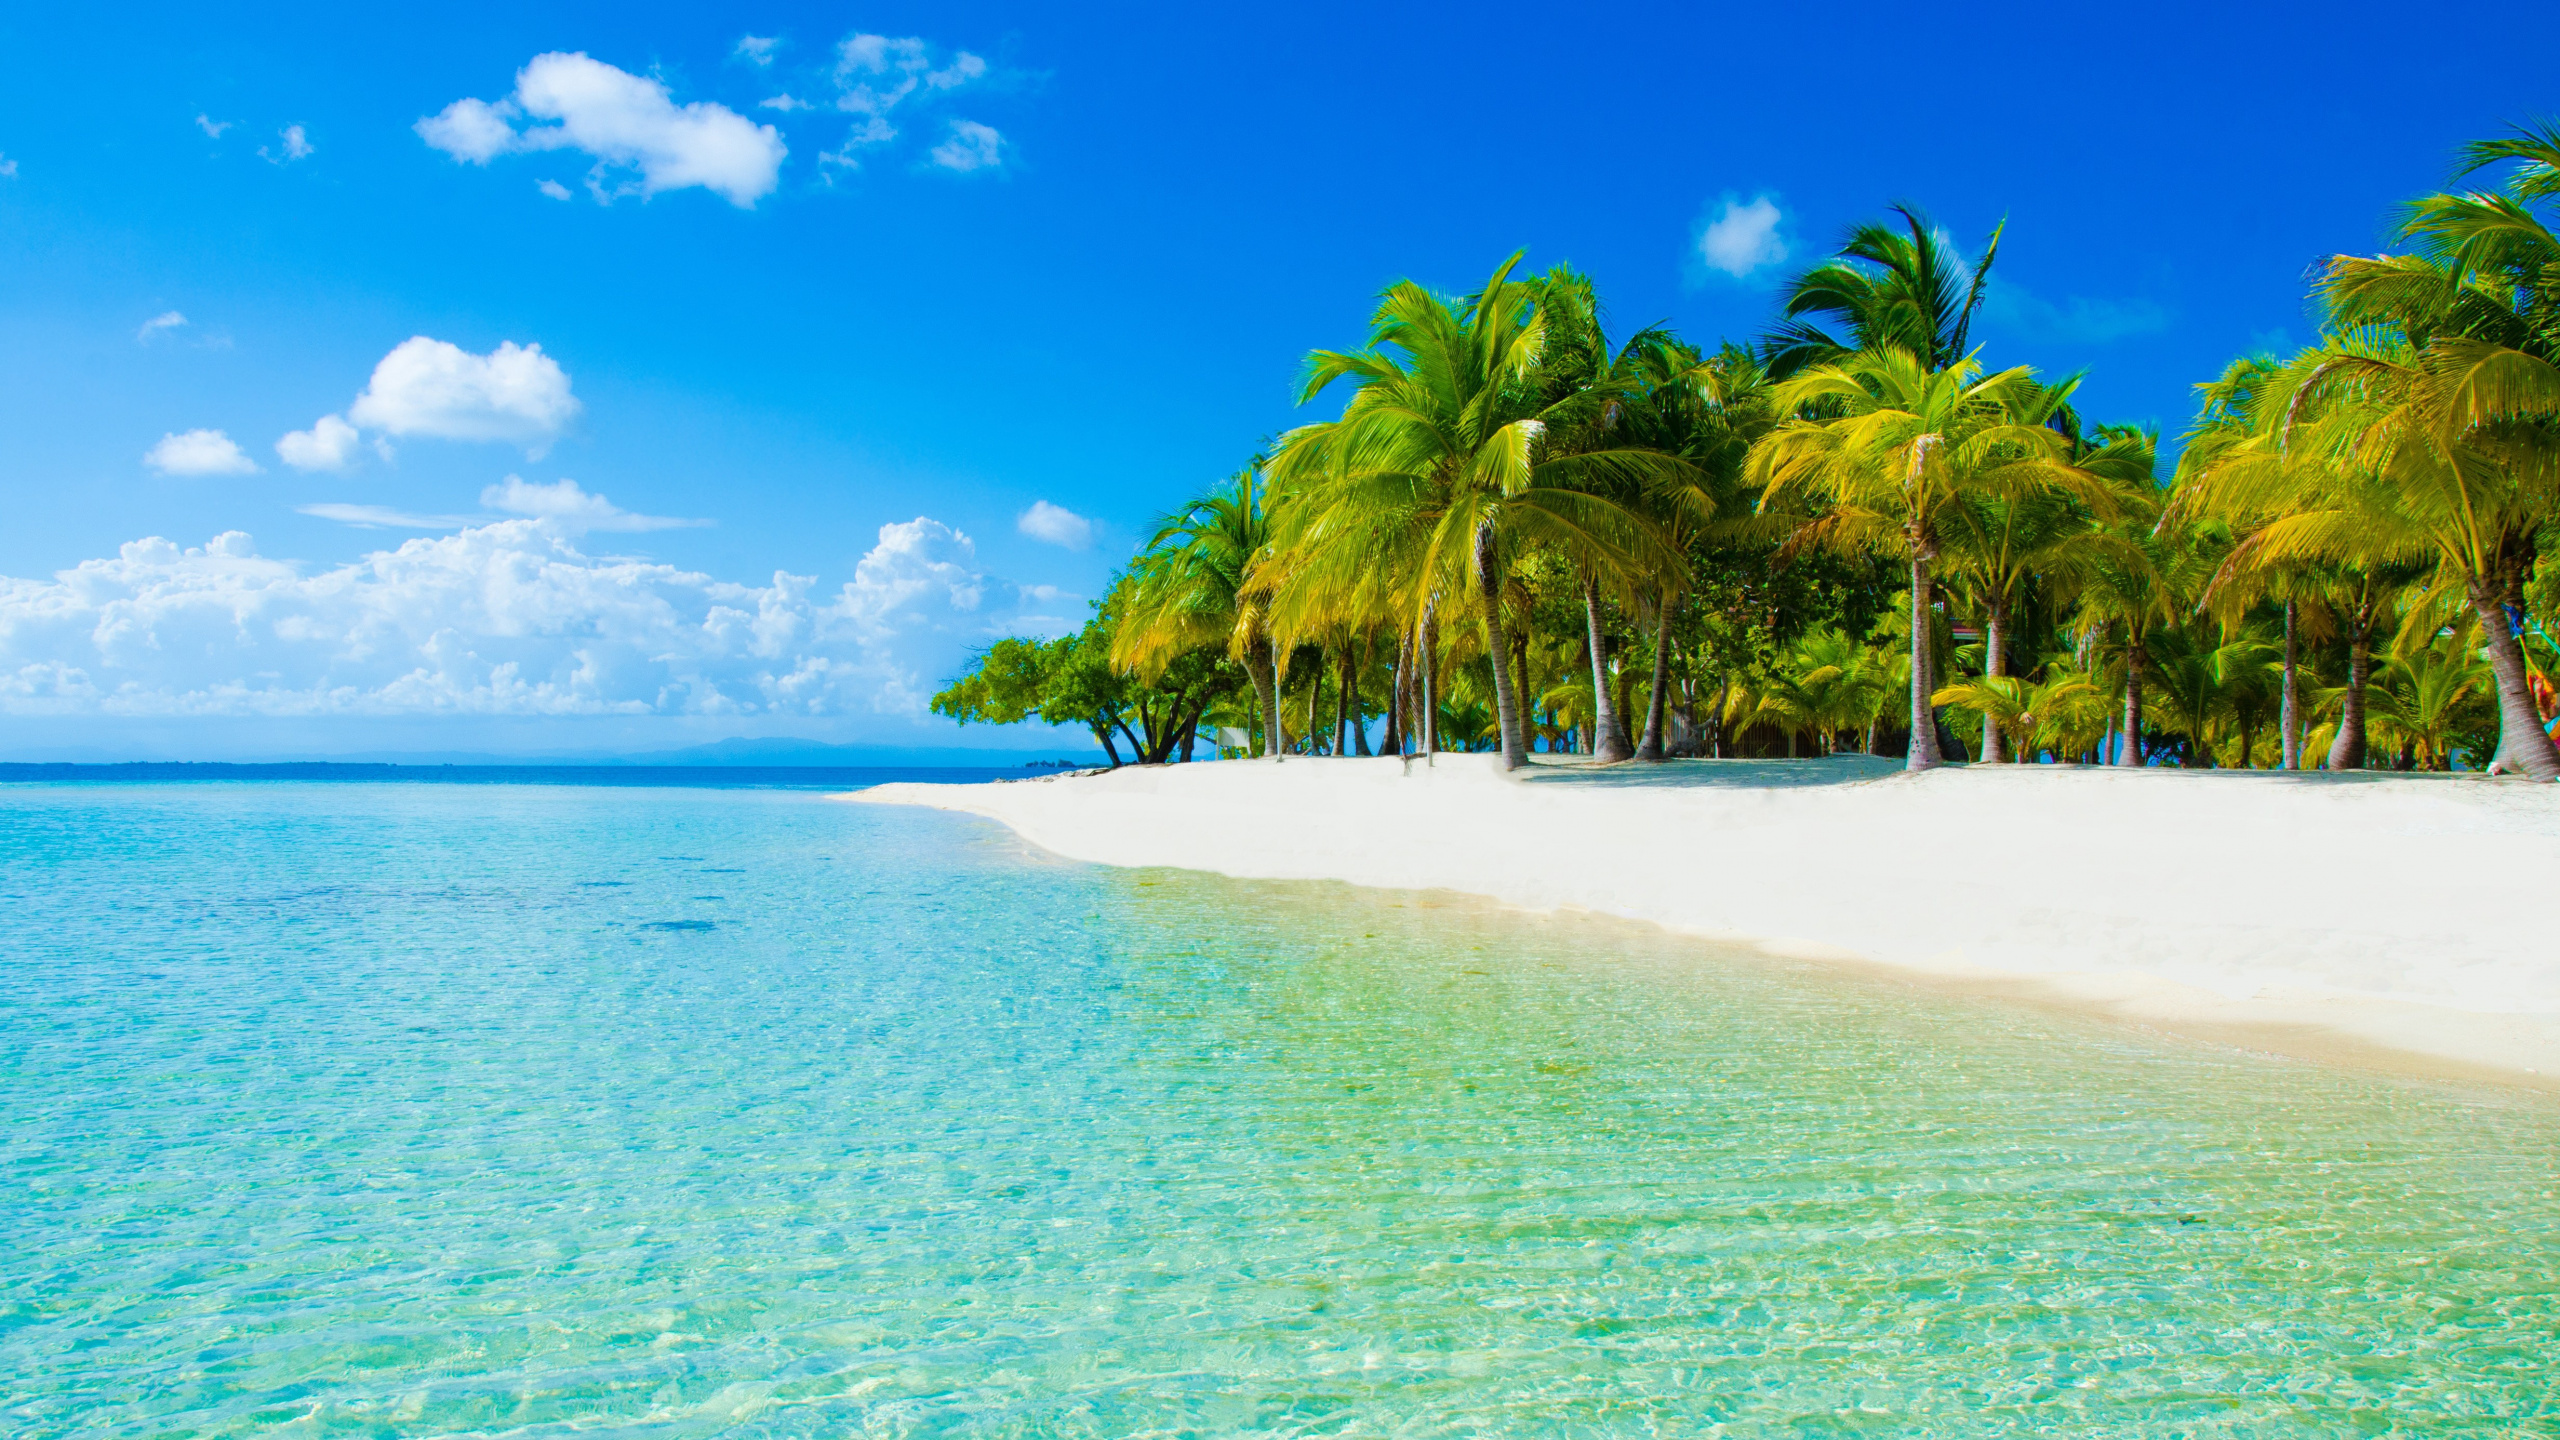 度假村, 热带地区, 大海, 海洋, 加勒比 壁纸 2560x1440 允许